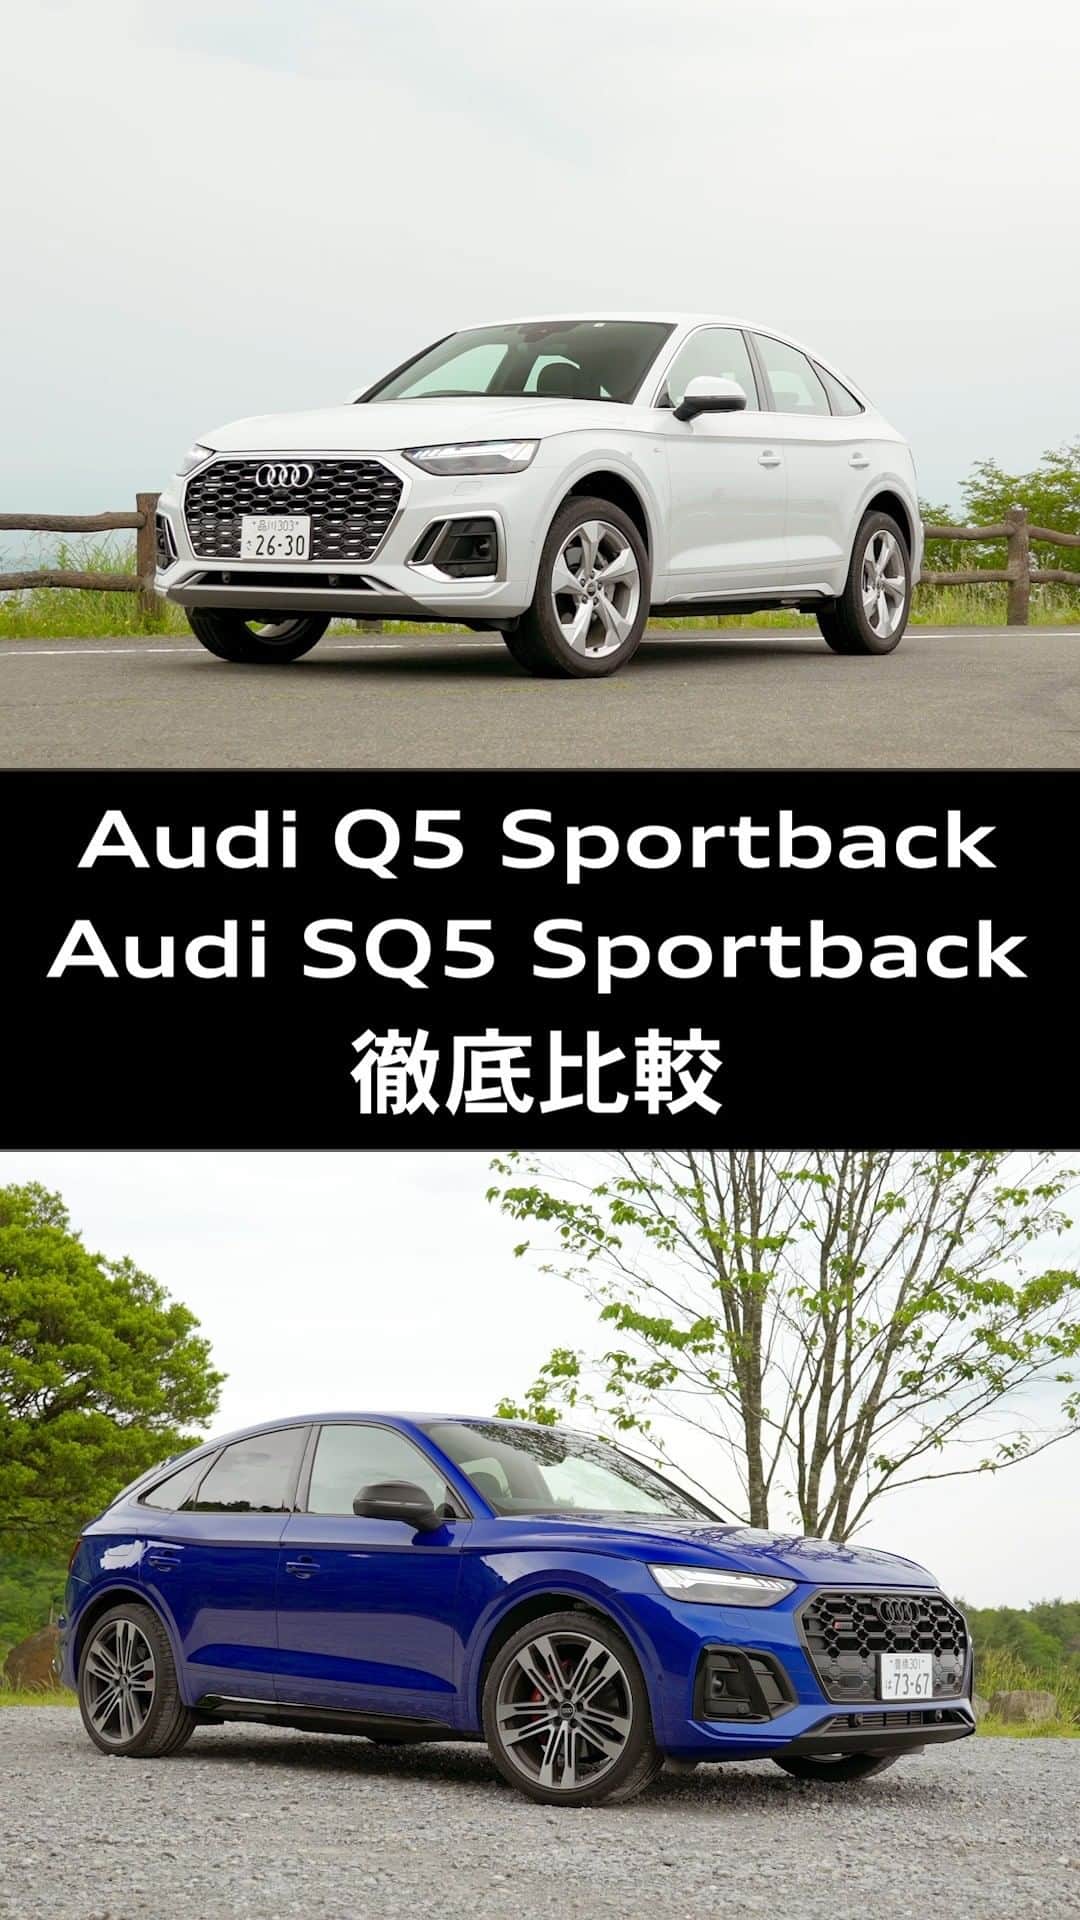 Audi Japan Sales / アウディジャパン販売のインスタグラム：「【Audi Q5 Sportback ＆ Audi SQ5 Sportback それぞれの性能を徹底比較】 　 プレミアムミッドサイズSUV、Audi Q5 Sportbackと、そのハイパフォーマンスモデルであるAudi SQ5 Sportback。  Q5の魅力と、スポーツモデルSQ5の魅力を様々なシチュエーションでのインプレッションを交えながらご紹介しております。  Audi Q5 Sportback ＆ Audi SQ5 Sportback徹底比較の詳細は、「Audi Sales Japan（AJS）公式Youtubeチャンネル」にて公開しています。  ぜひこの機会にご覧ください。 https://youtu.be/zzXEEGEQQvQ  @audi.japan.sales  #Audi  #AJS ＃AudiQ5 ＃AudiSQ5 #試乗　#myaudi #audistyle #car #carstagram　#アウディ #ドライブ #車 ＃試乗 #愛車 #外車 #ドイツ車 #車好き #車好きな人と繋がりたい #アウディ女子 #車好き男子」